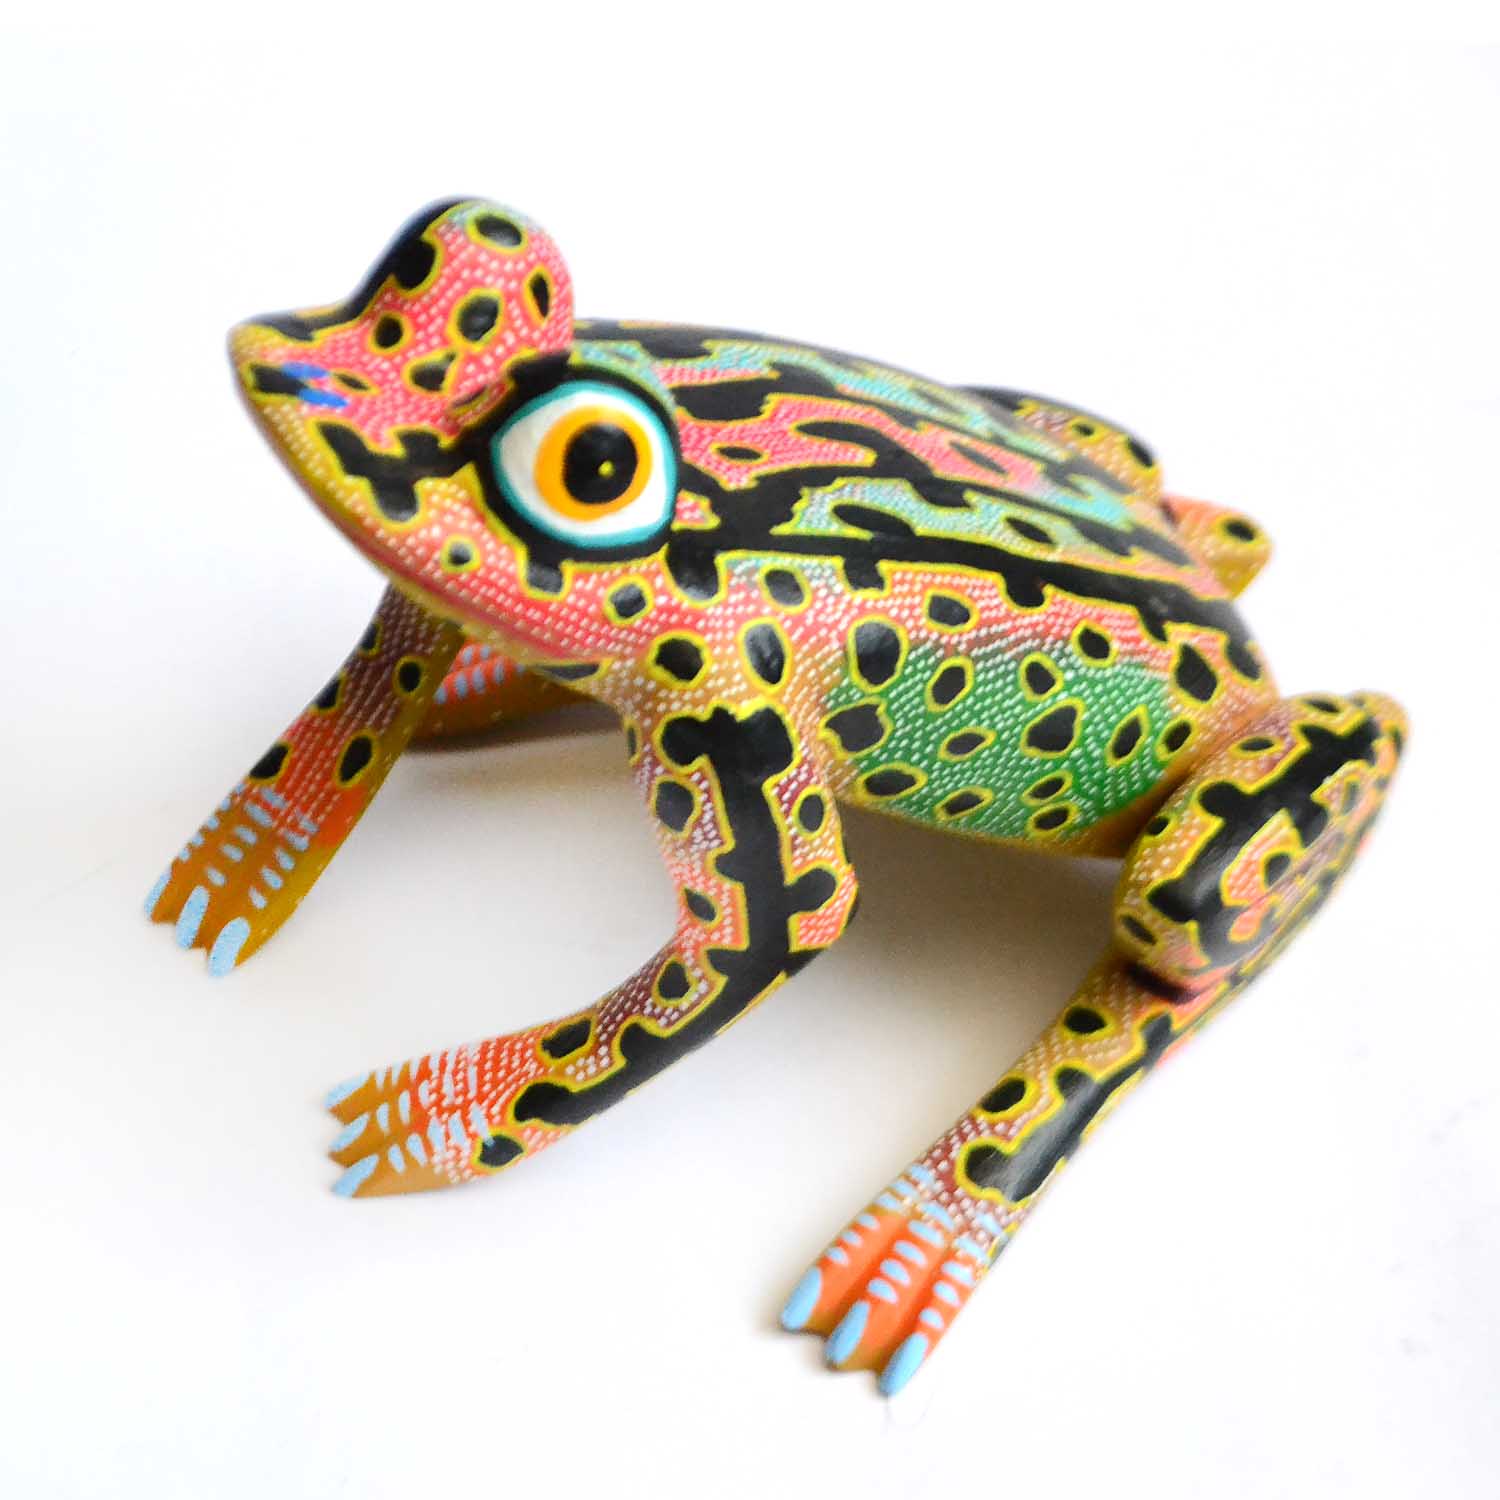 Rana - Frog